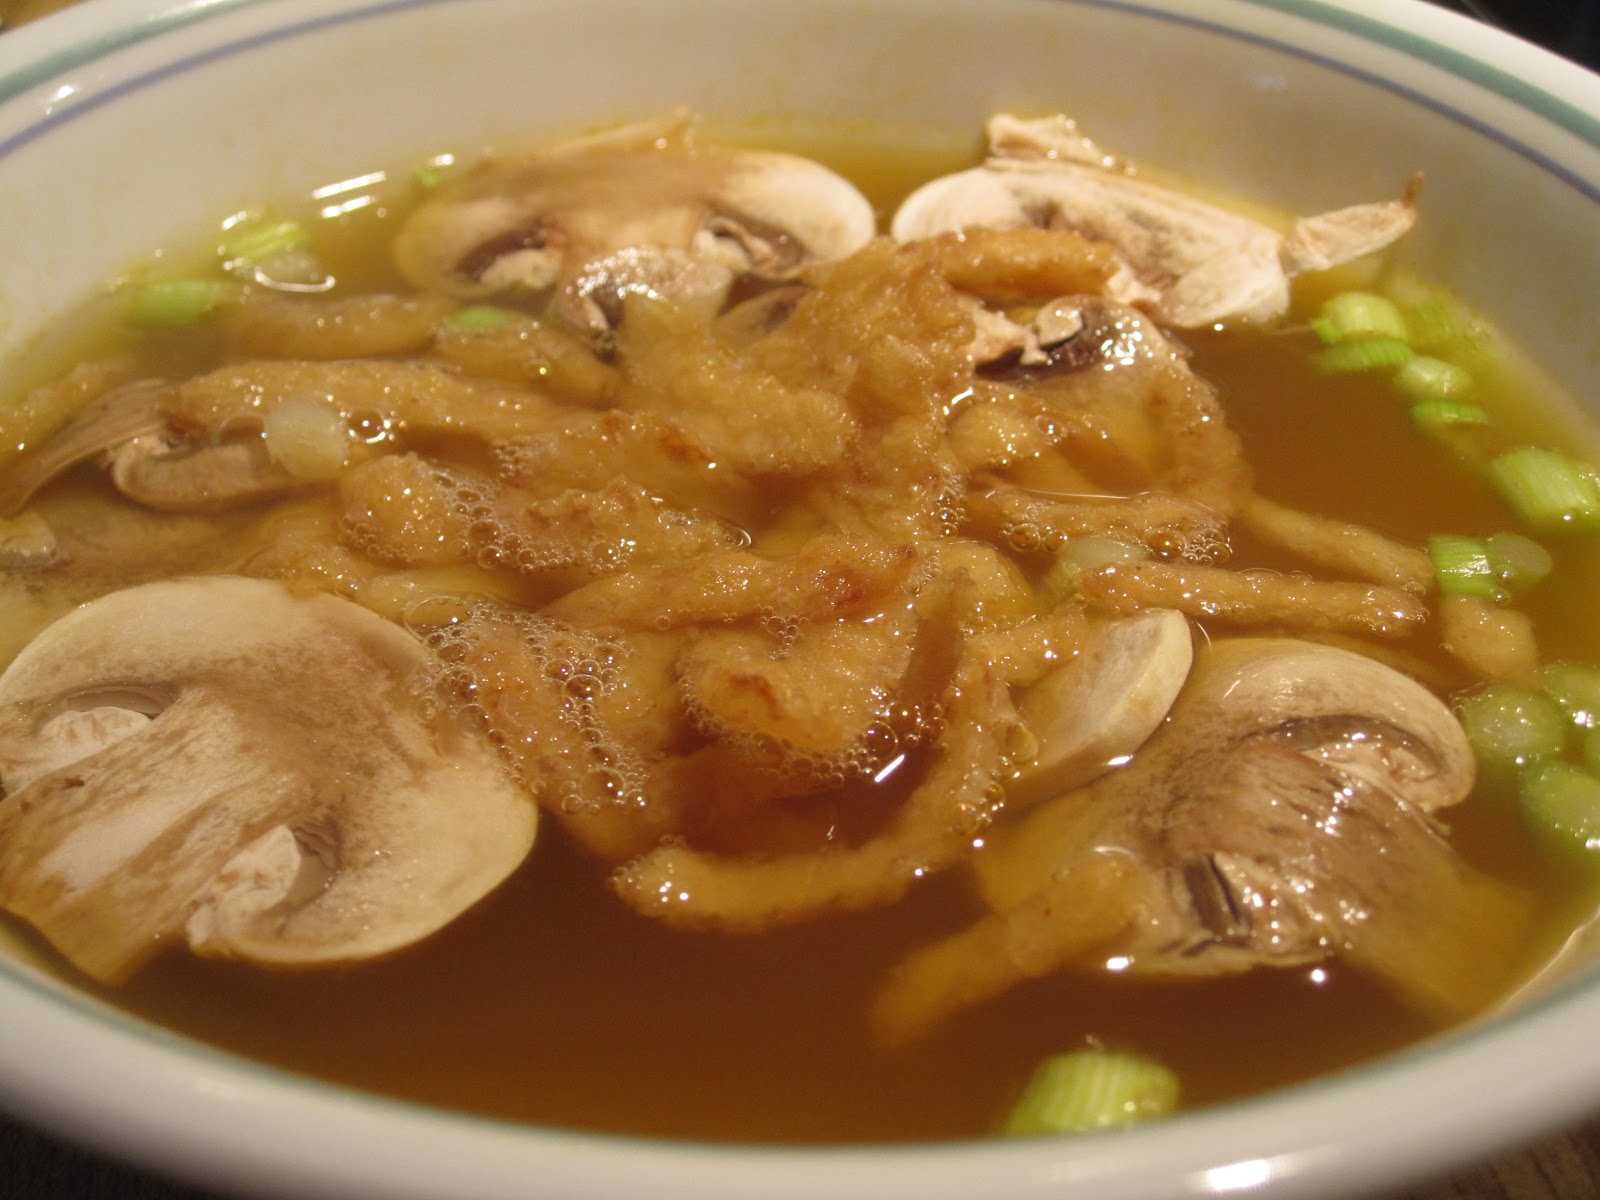 Hibachi Onion Soup